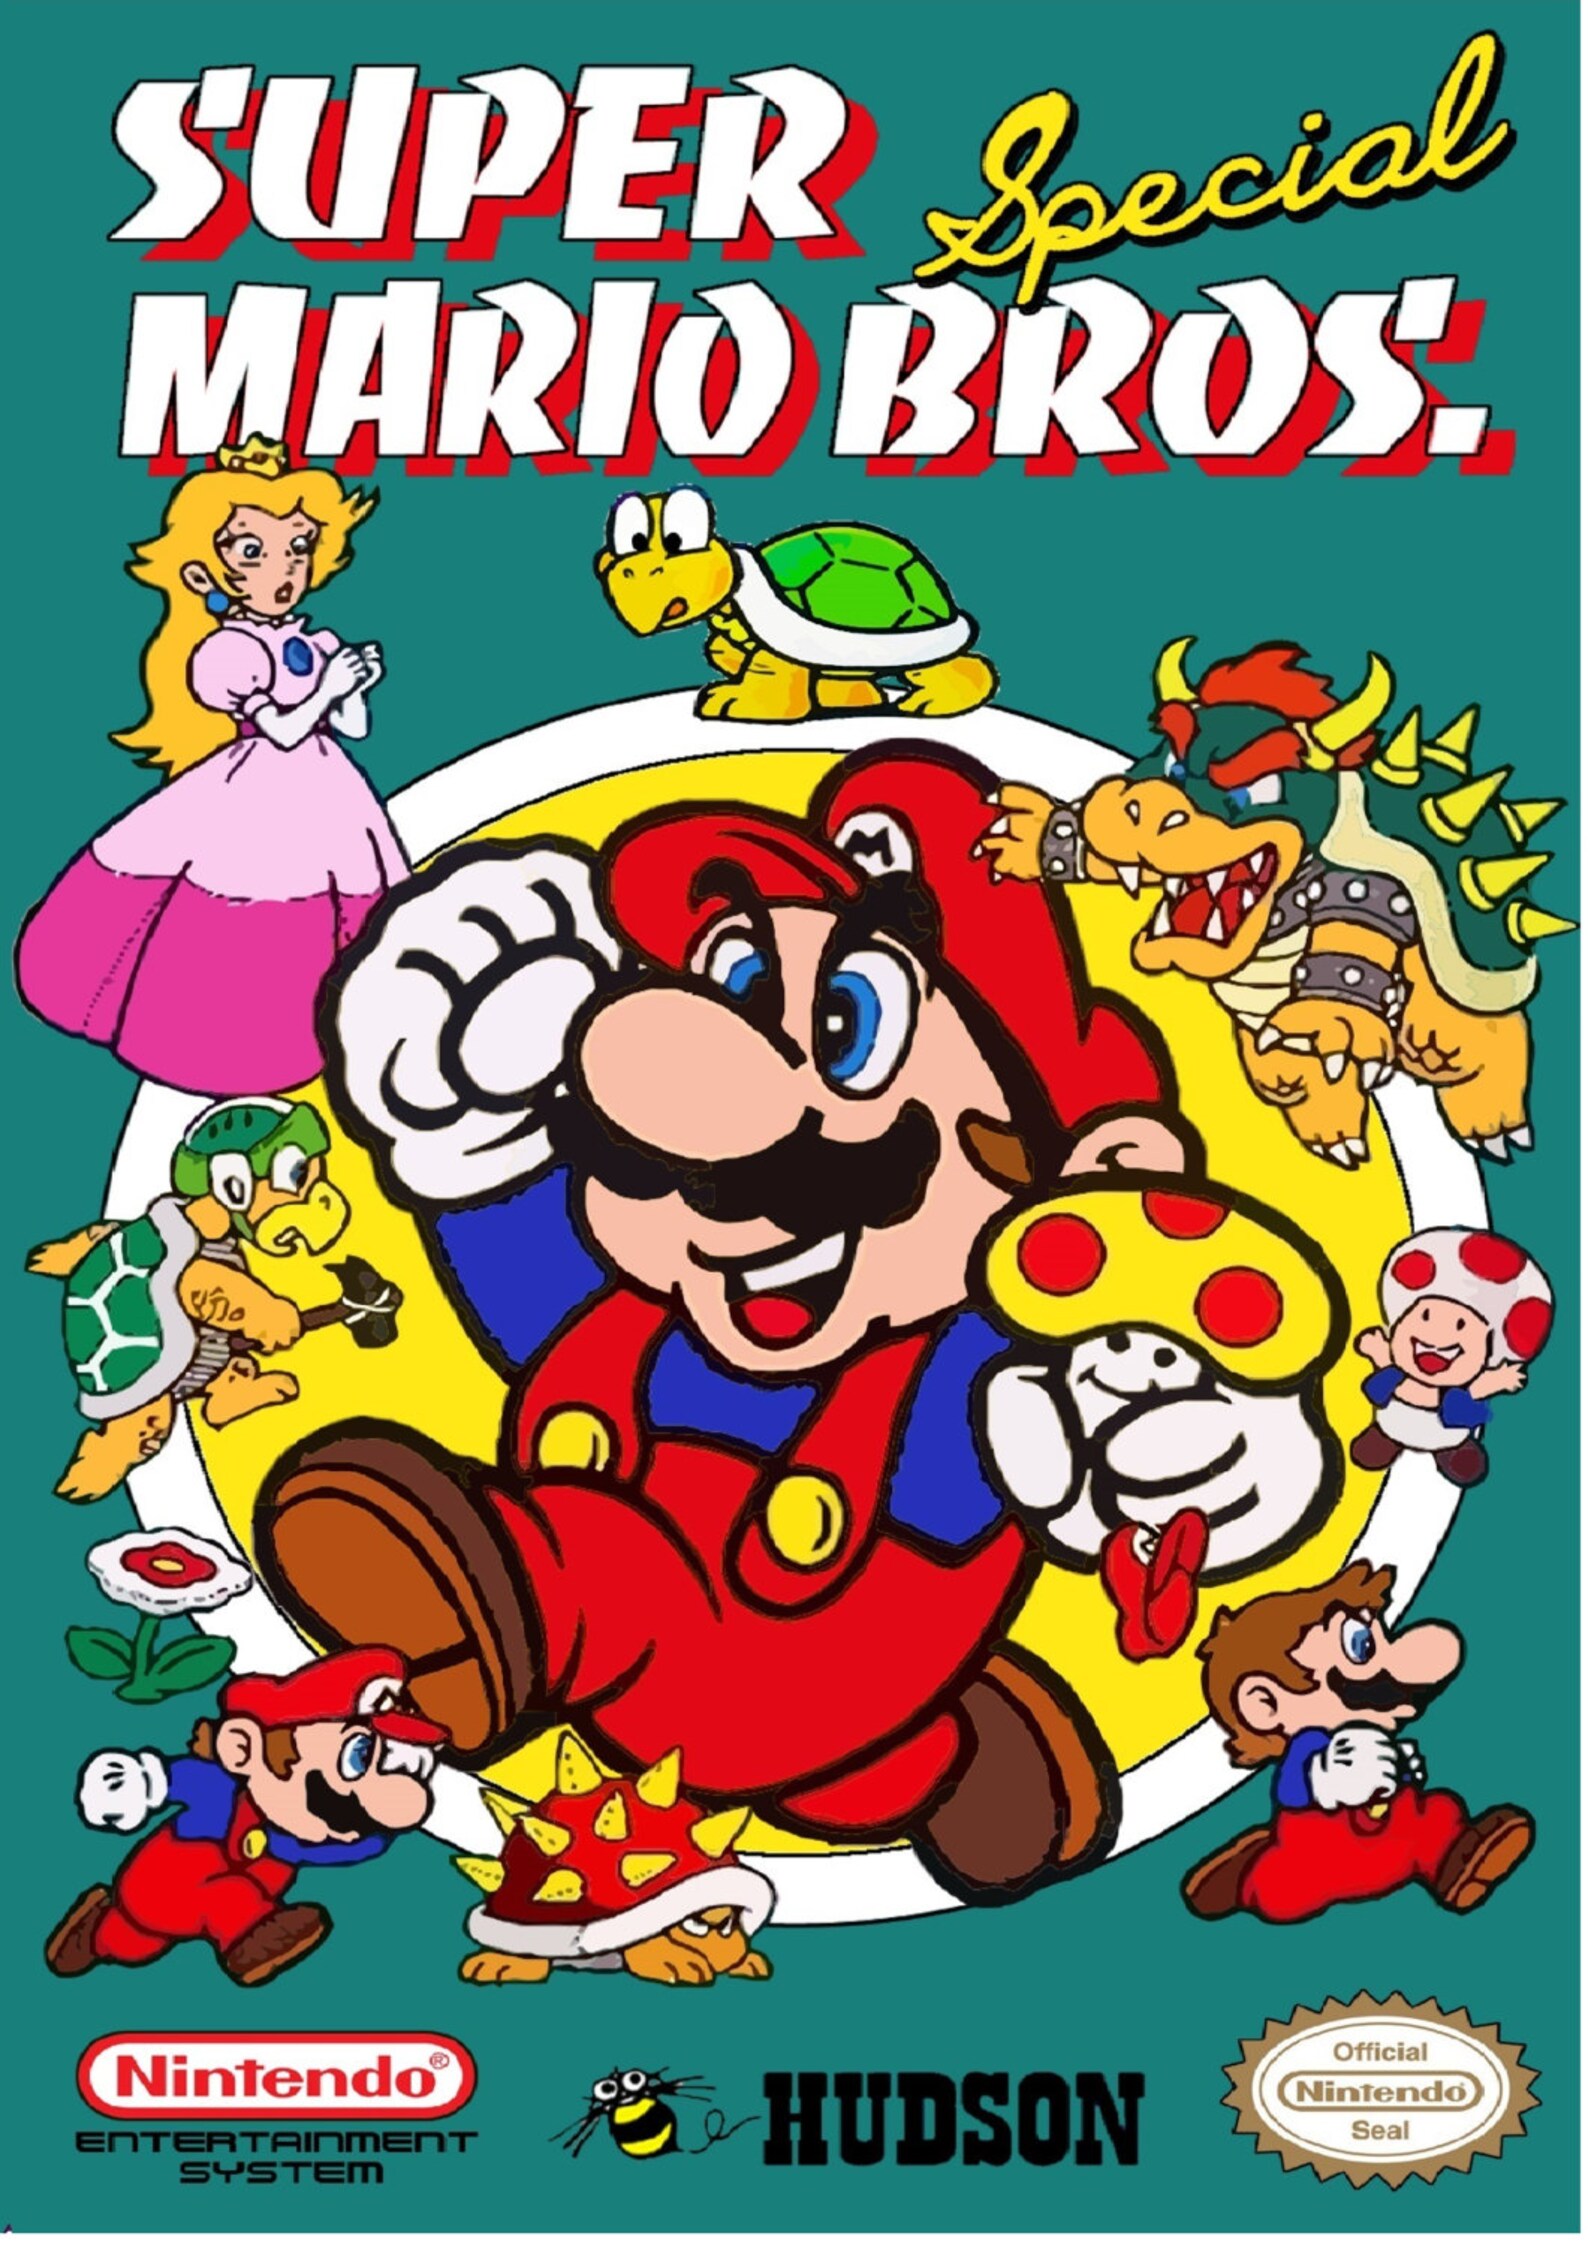 Mario bros special. Марио 1986. Super Mario Bros. Обложка. Nintendo super Mario Bros. Super Mario Bros NES.